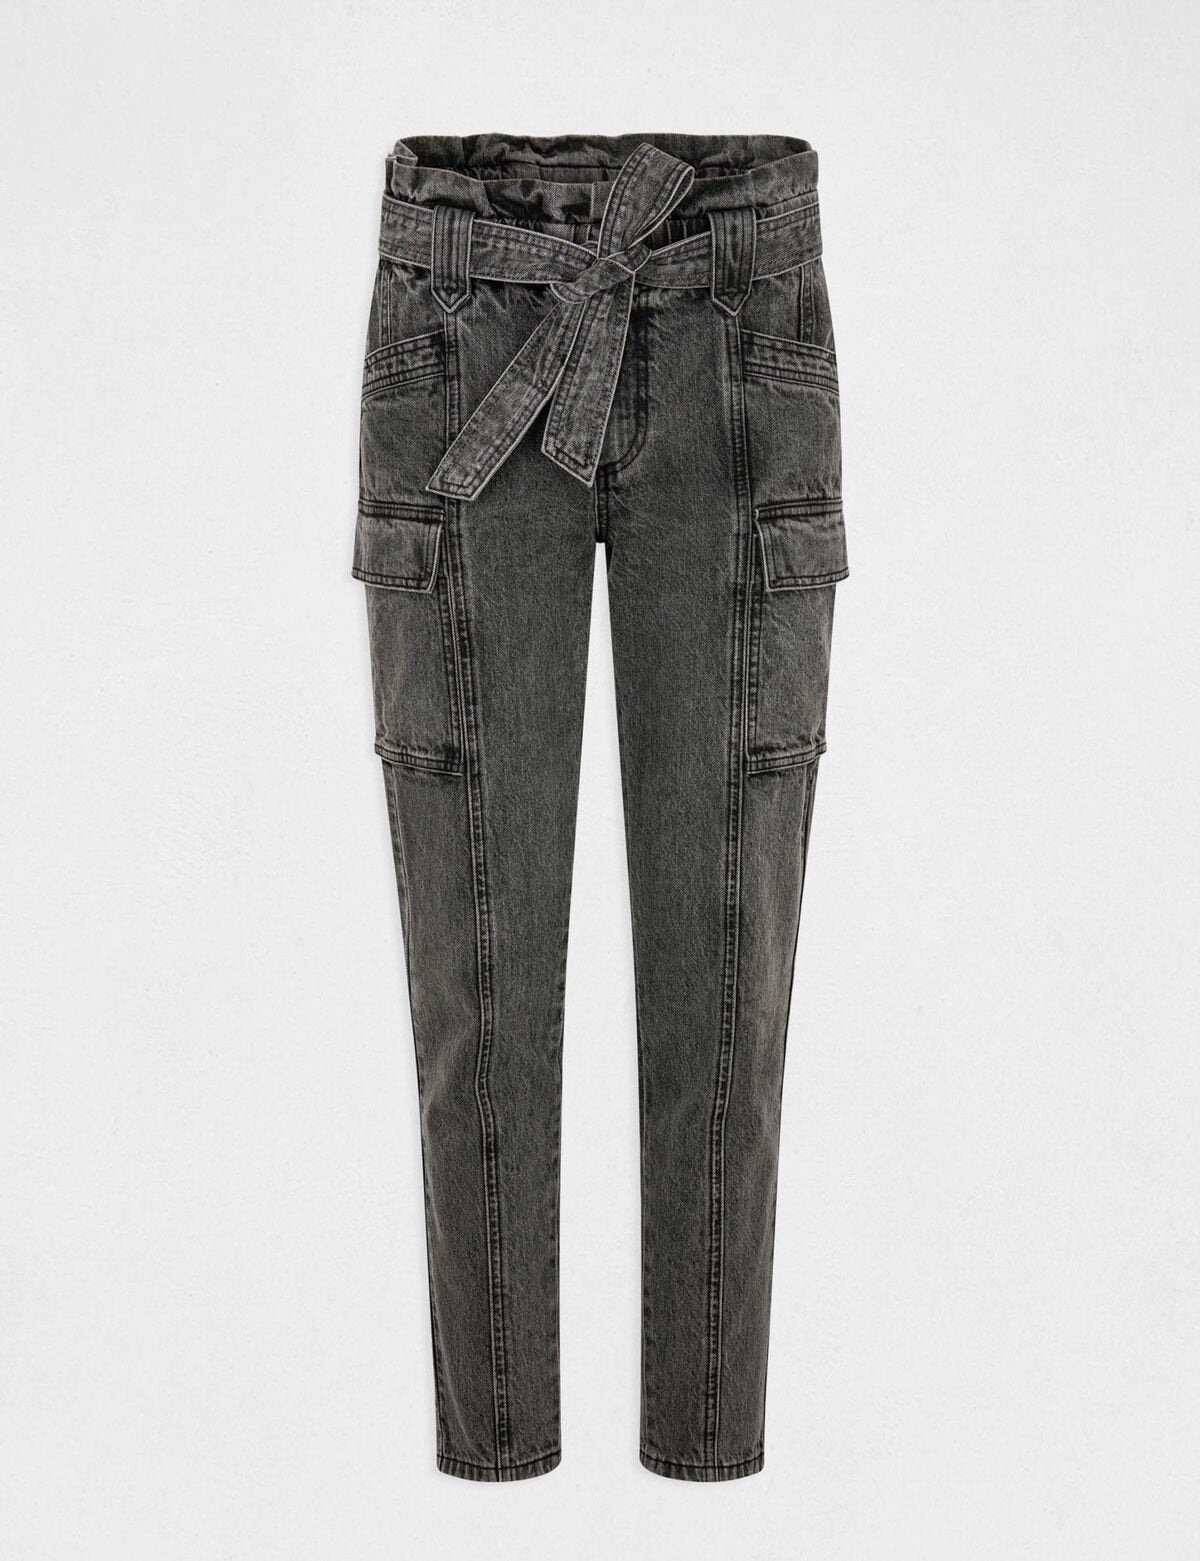 Morgan de toi jeans cargo grigio - Premium JEANS from MORGAN DE TOI - Just €65! Shop now at Amaltea